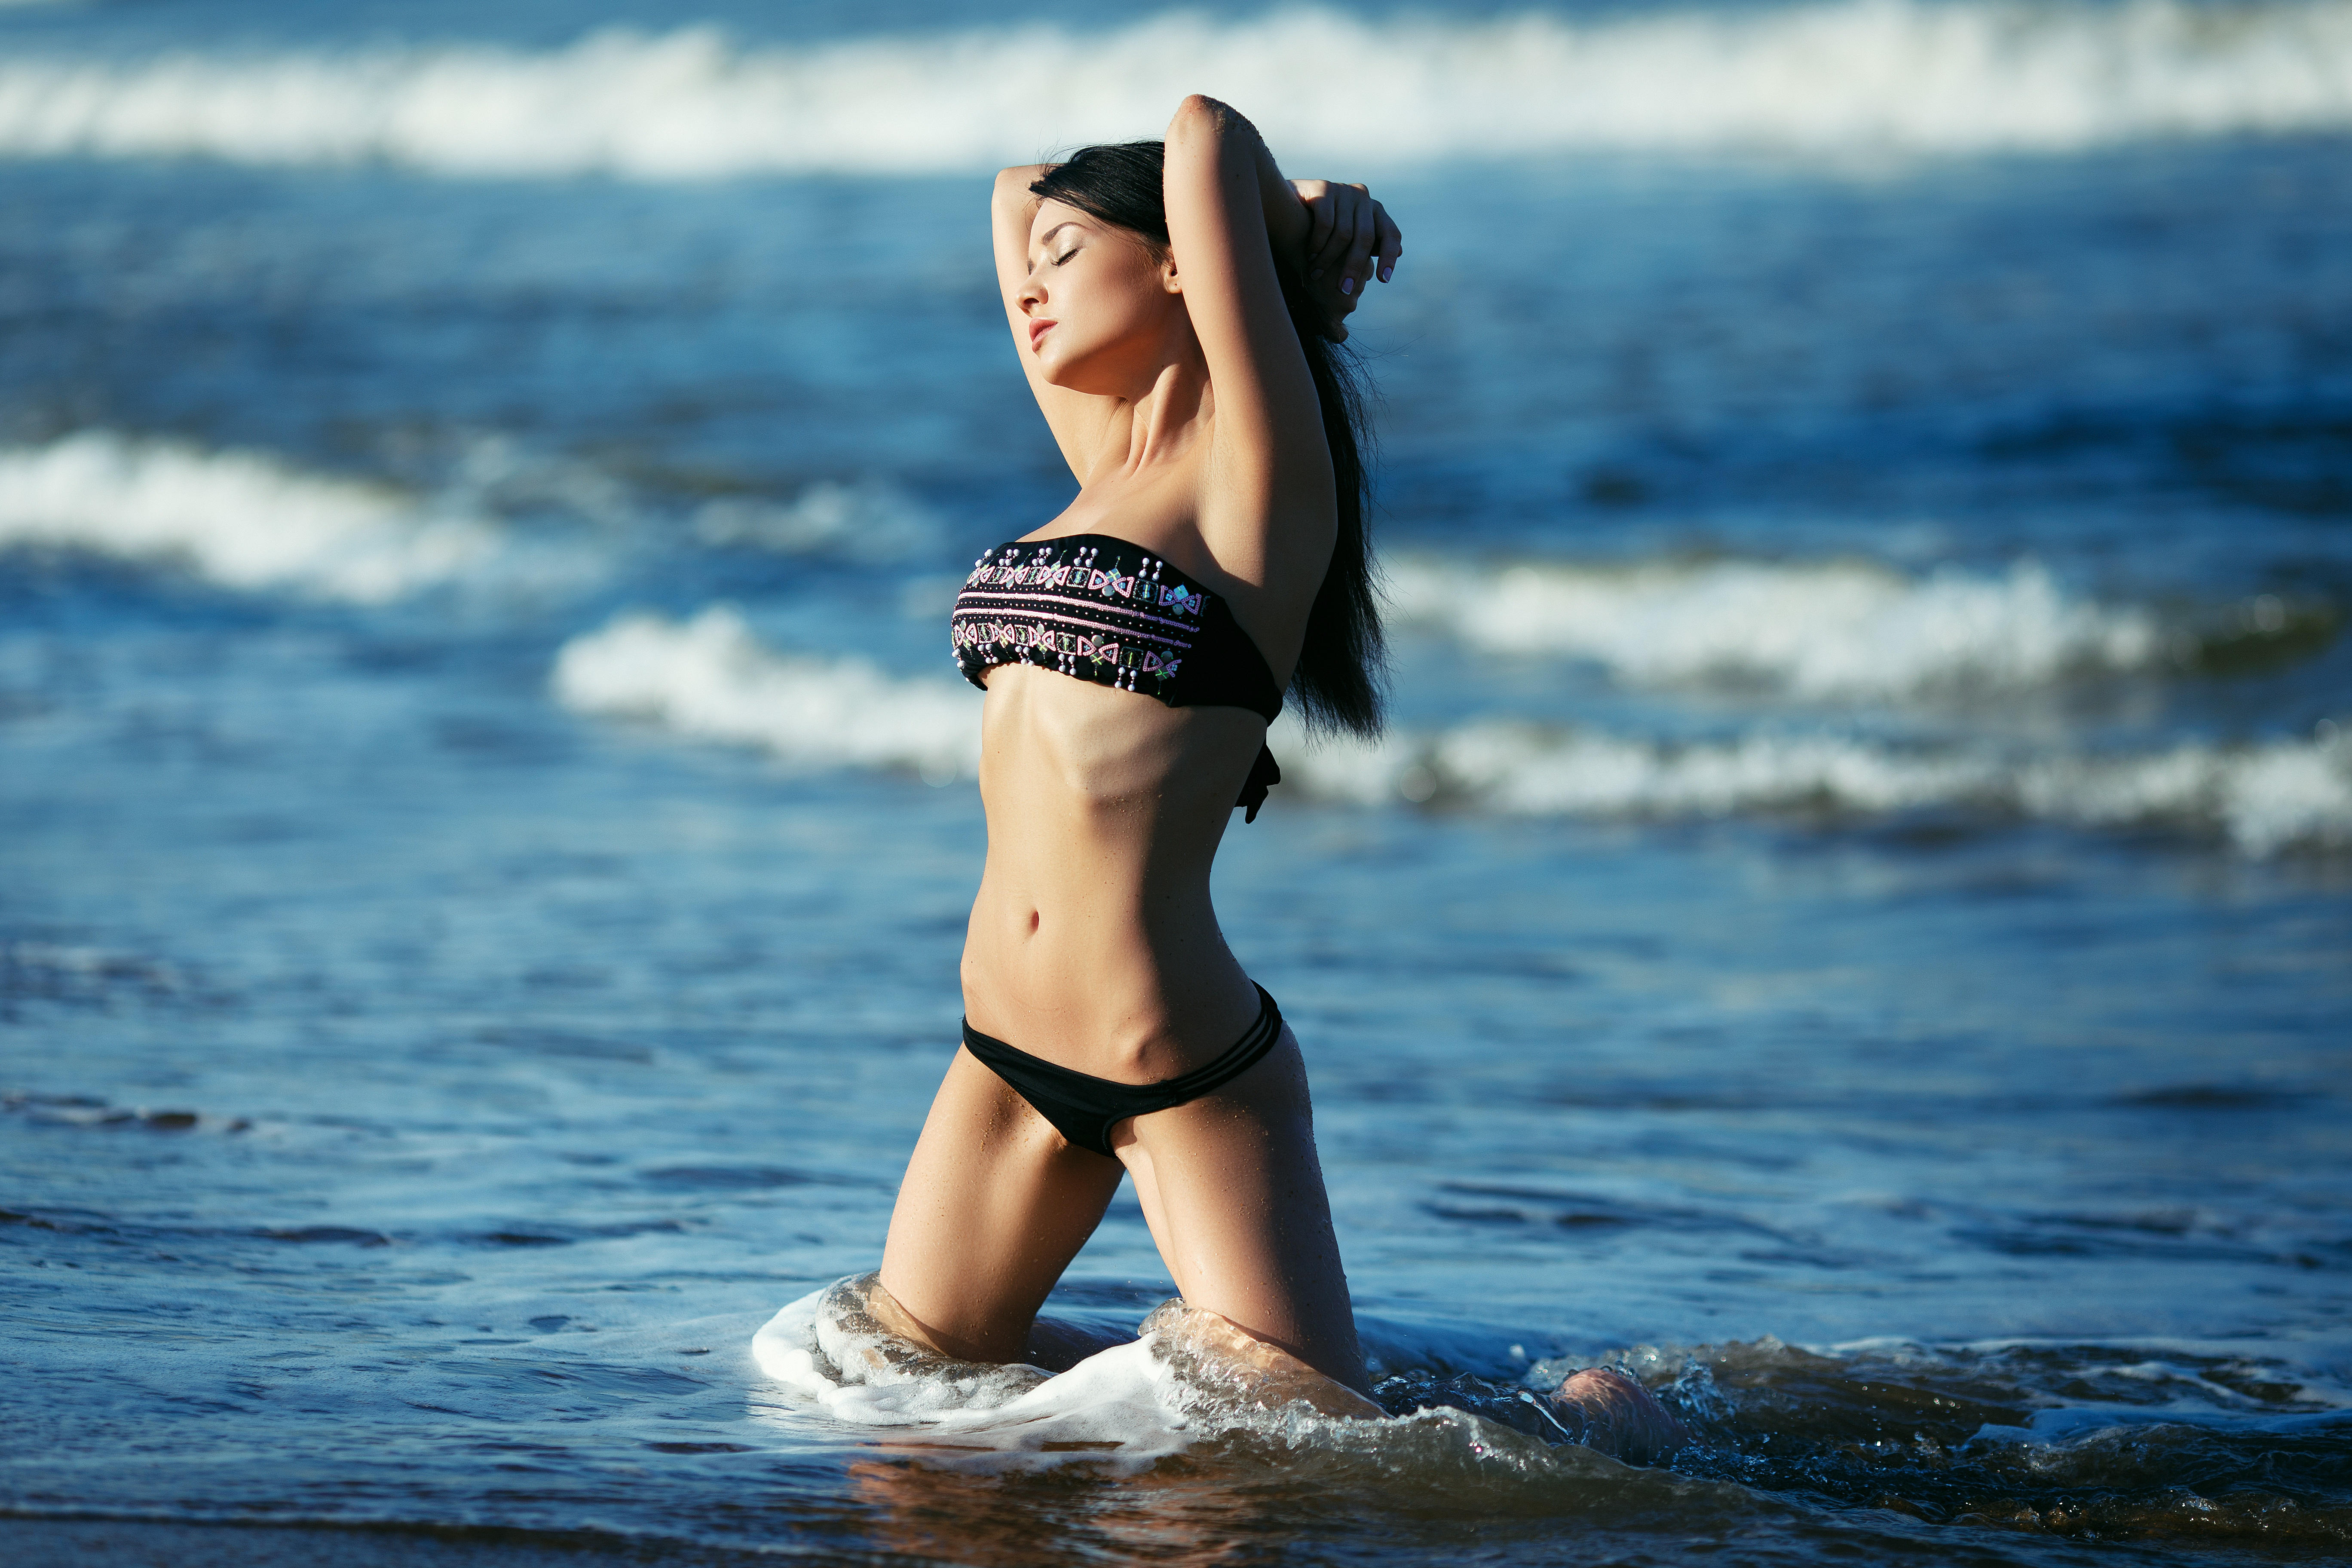 Фото девушка модель волны - бесплатные картинки на Fonwall